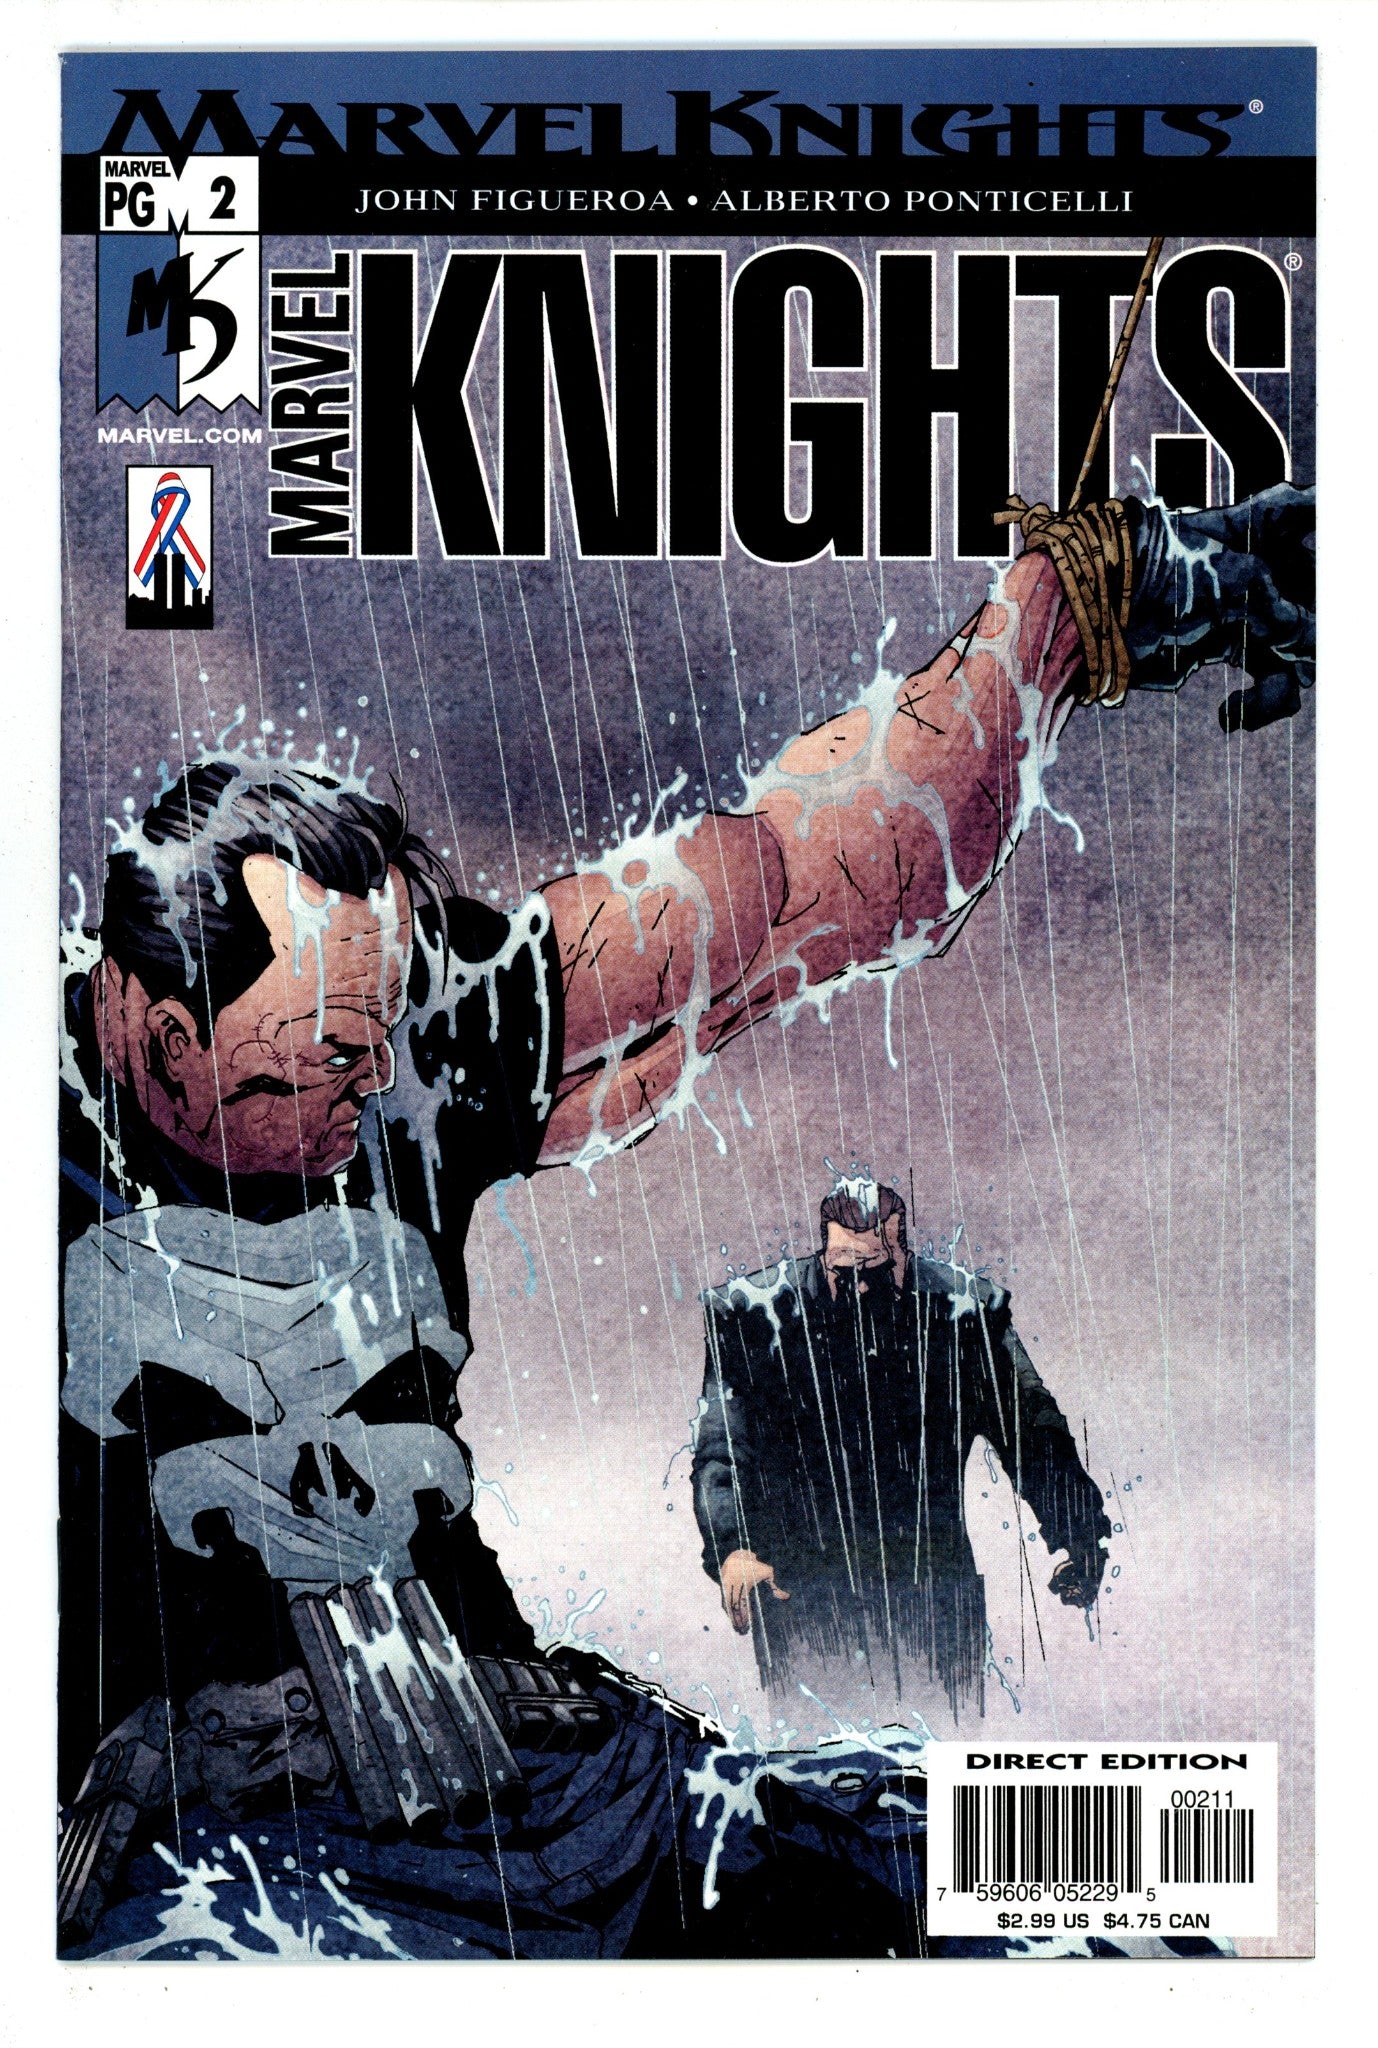 Marvel Knights Vol 2 2 High Grade (2002) 